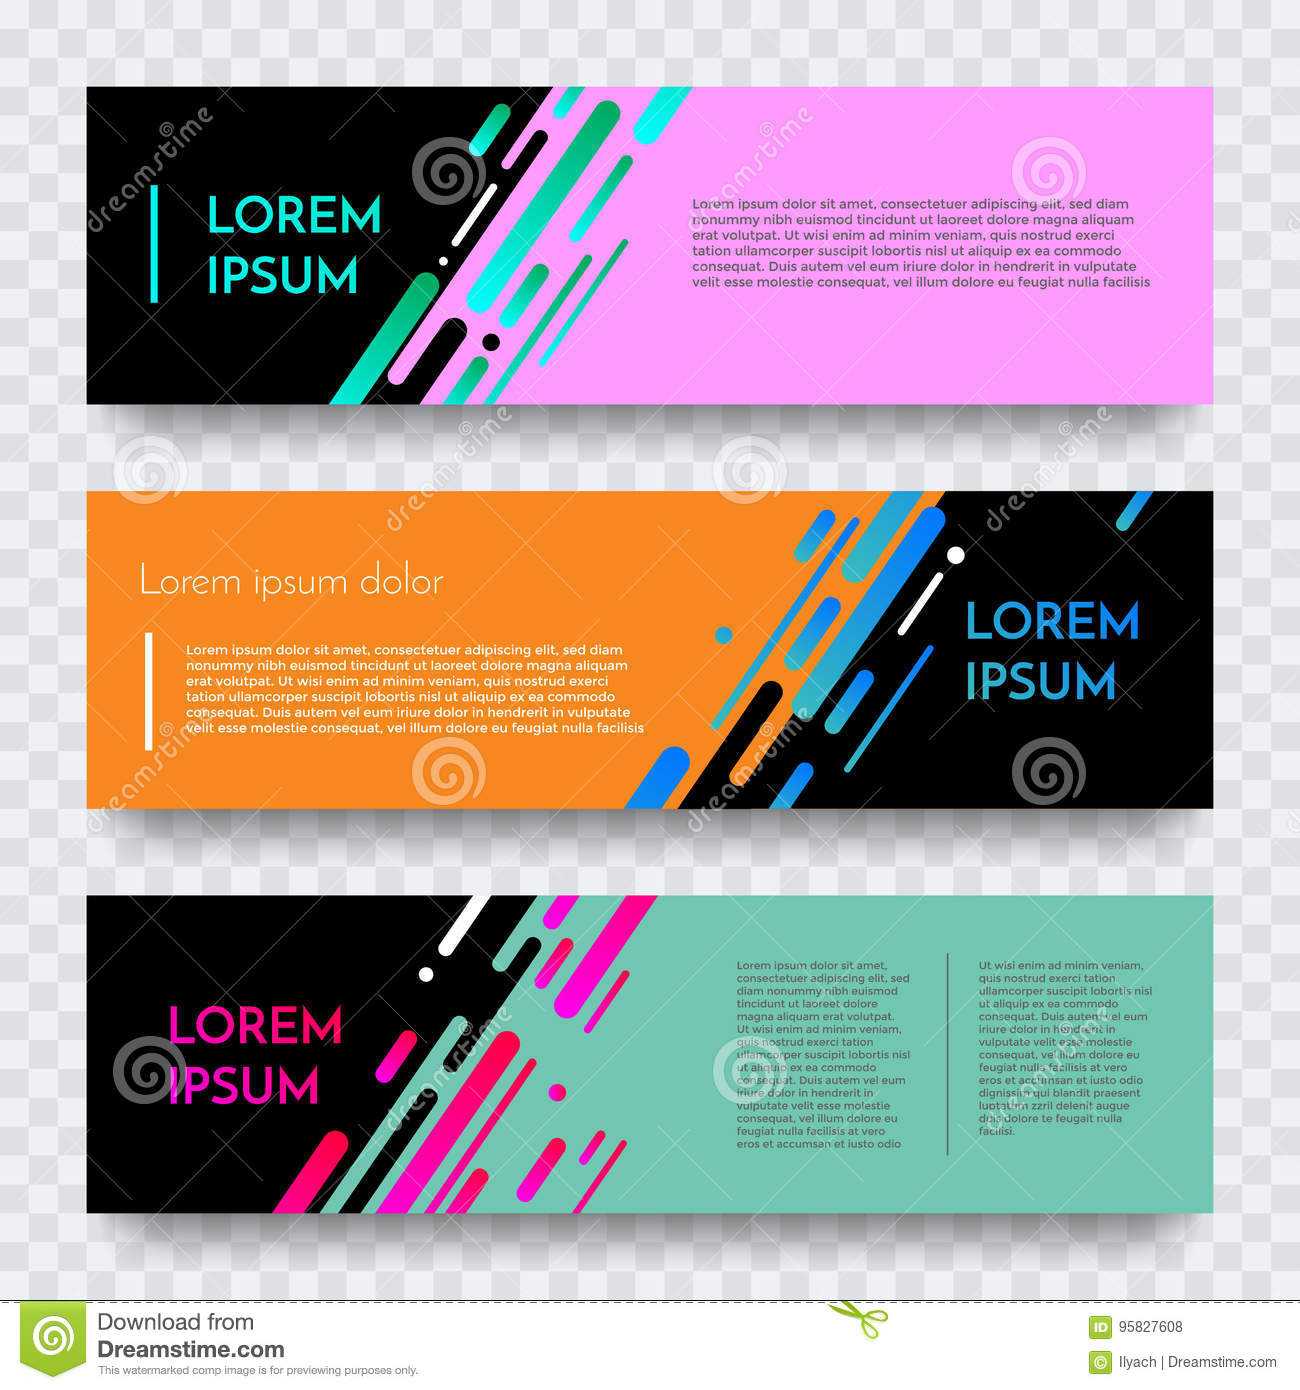 Web Banners Set For Vector Digital Website Background For Website Banner Design Templates